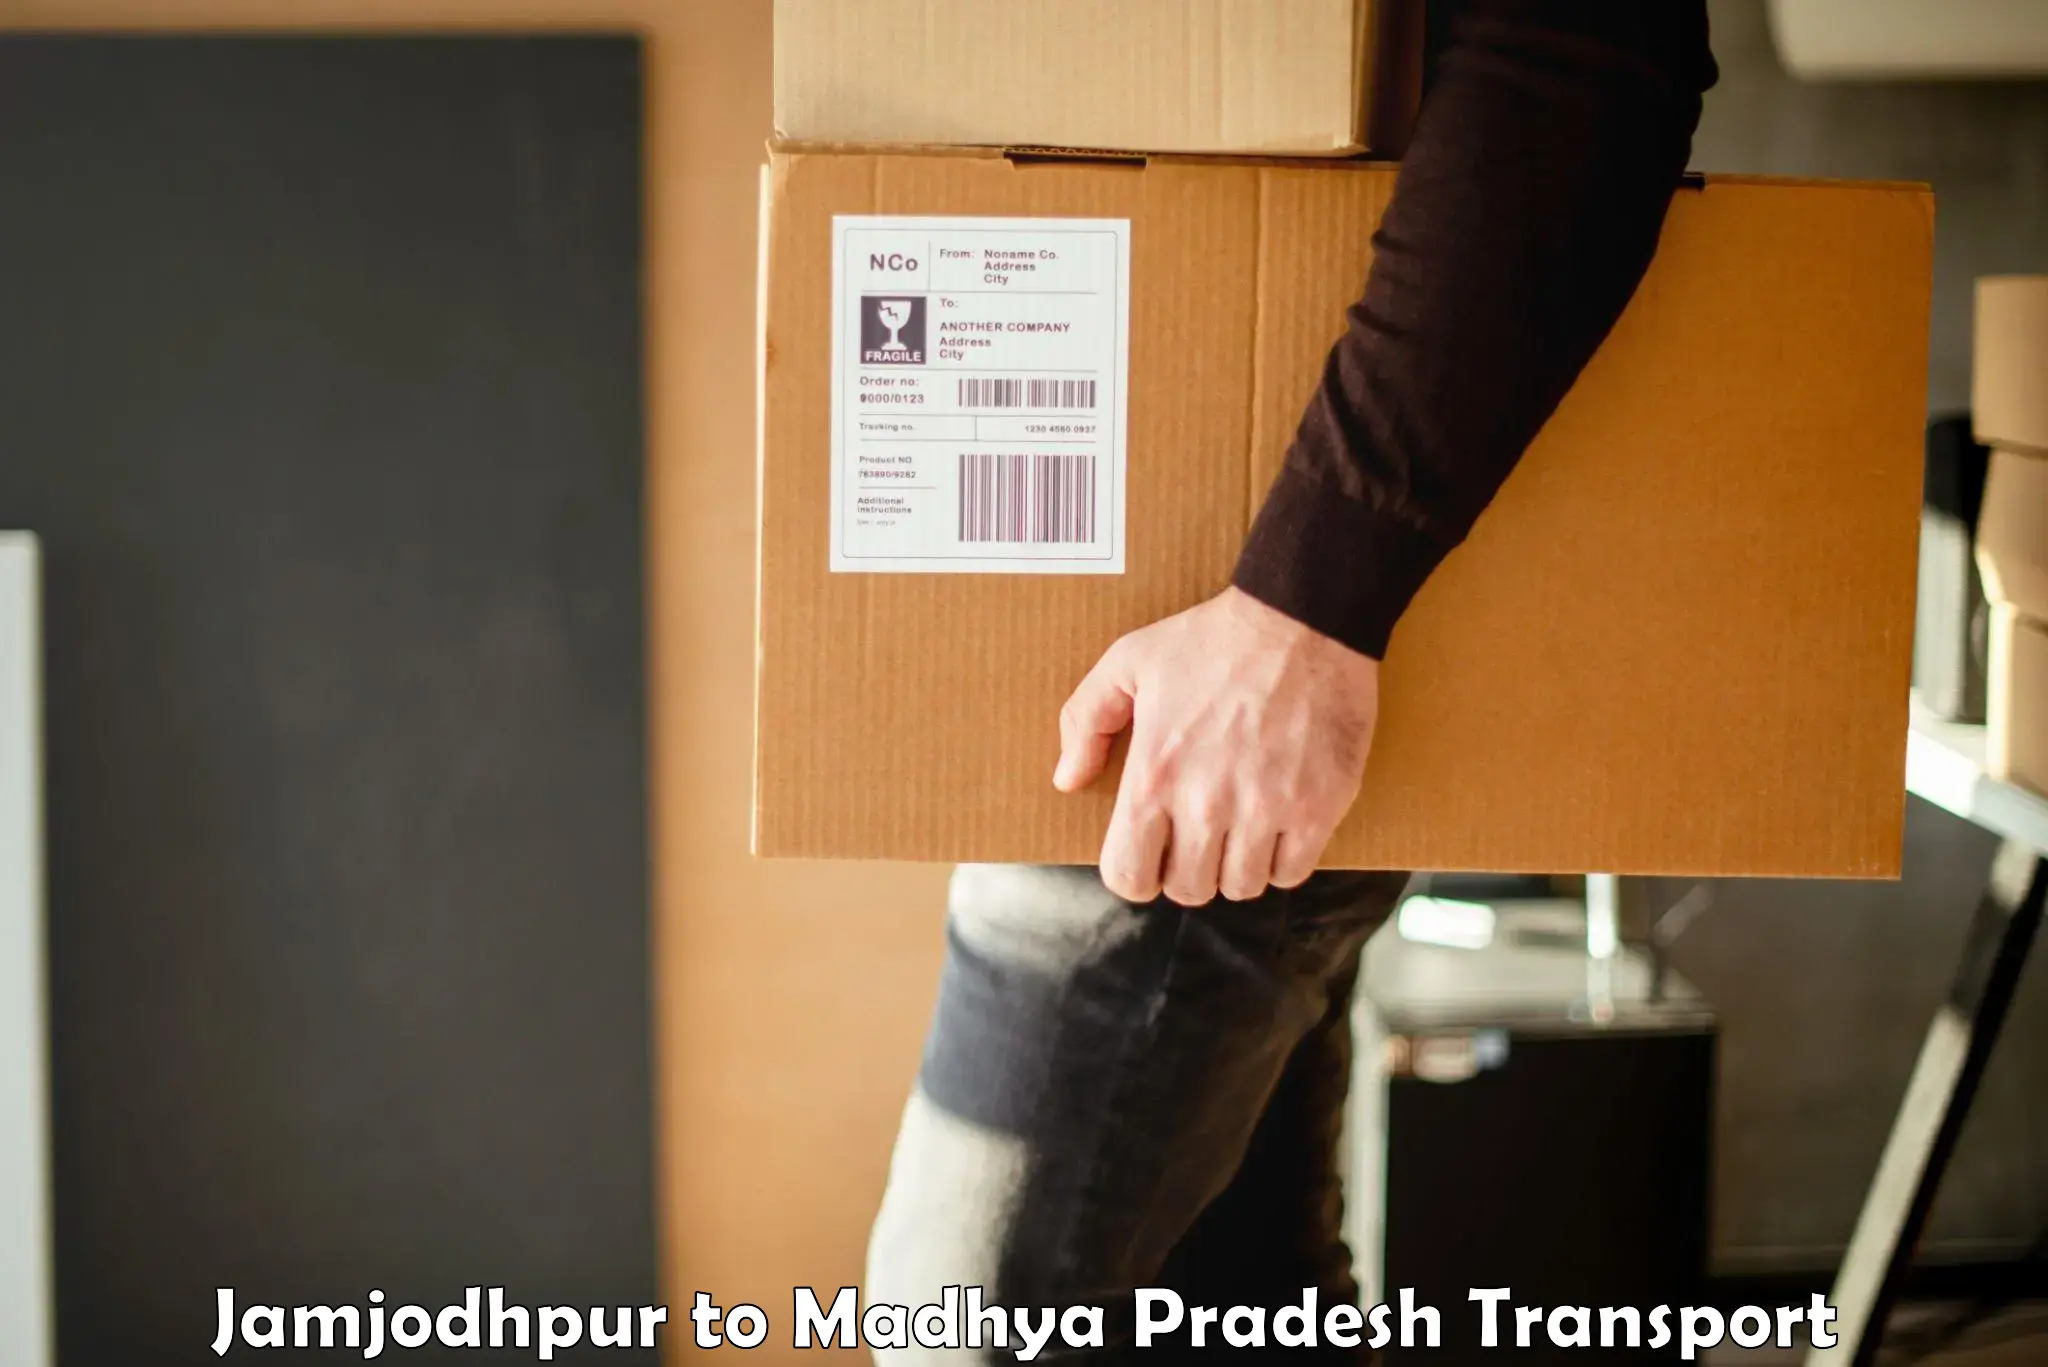 Daily transport service Jamjodhpur to Shajapur